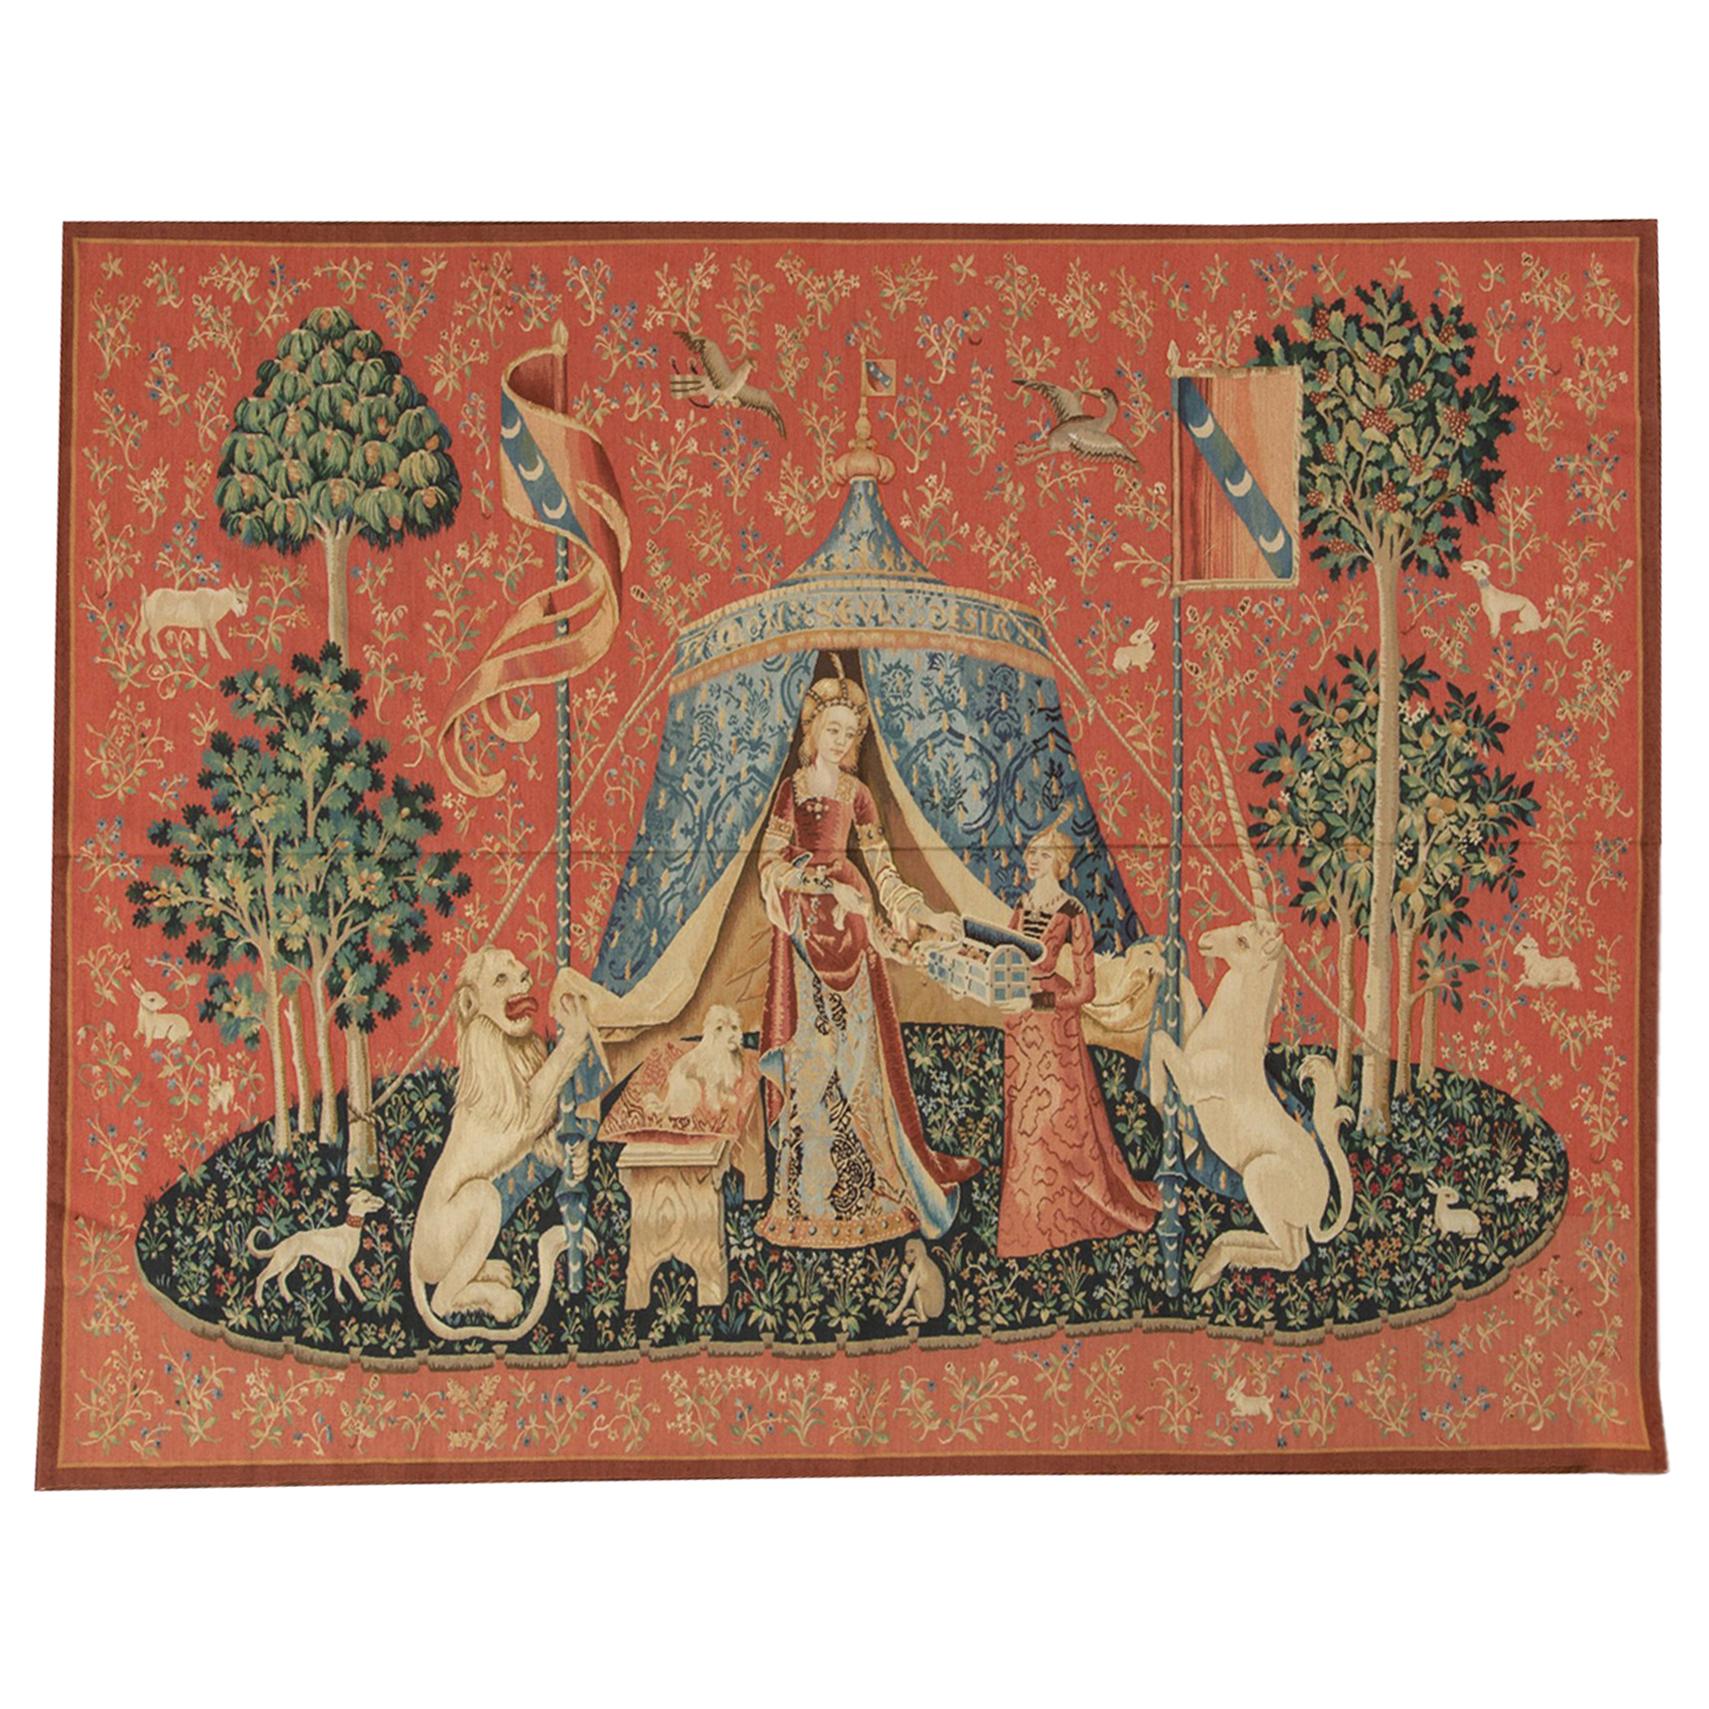 Série "Taste" de la femme avec la licorne, tapisserie du 15e siècle